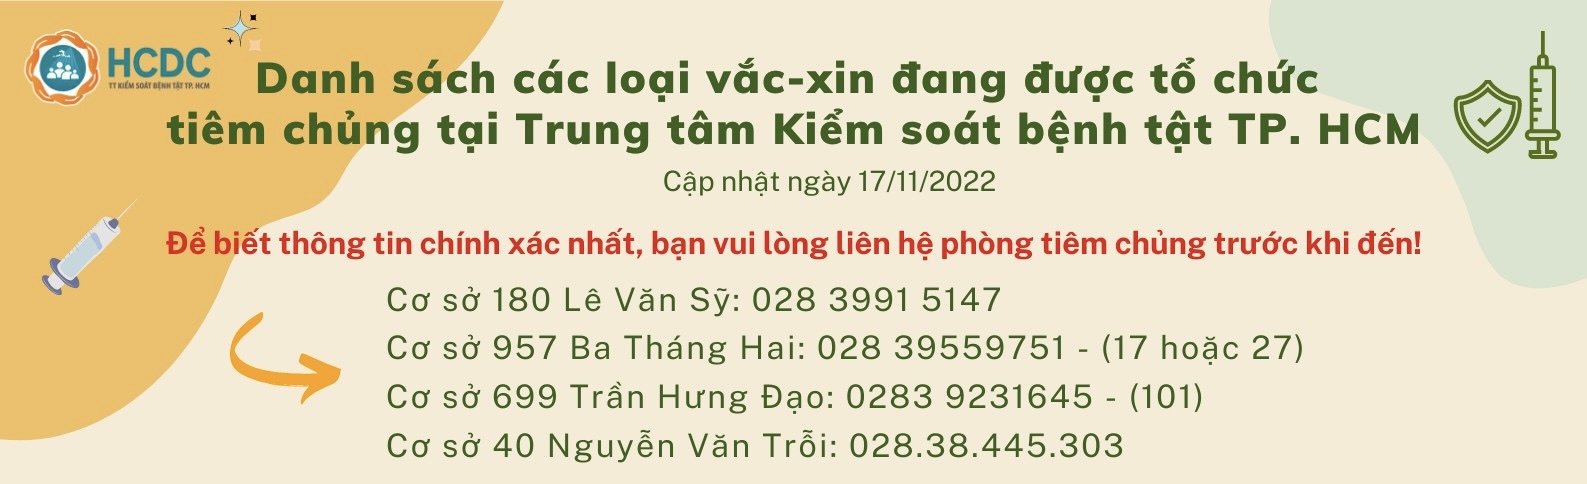 Danh sách các loại vắc-xin đang được tổ chức tiêm chủng tại Trung tâm Kiểm soát bệnh tật TP. Hồ Chí Minh (Ngày 17/11/2022)